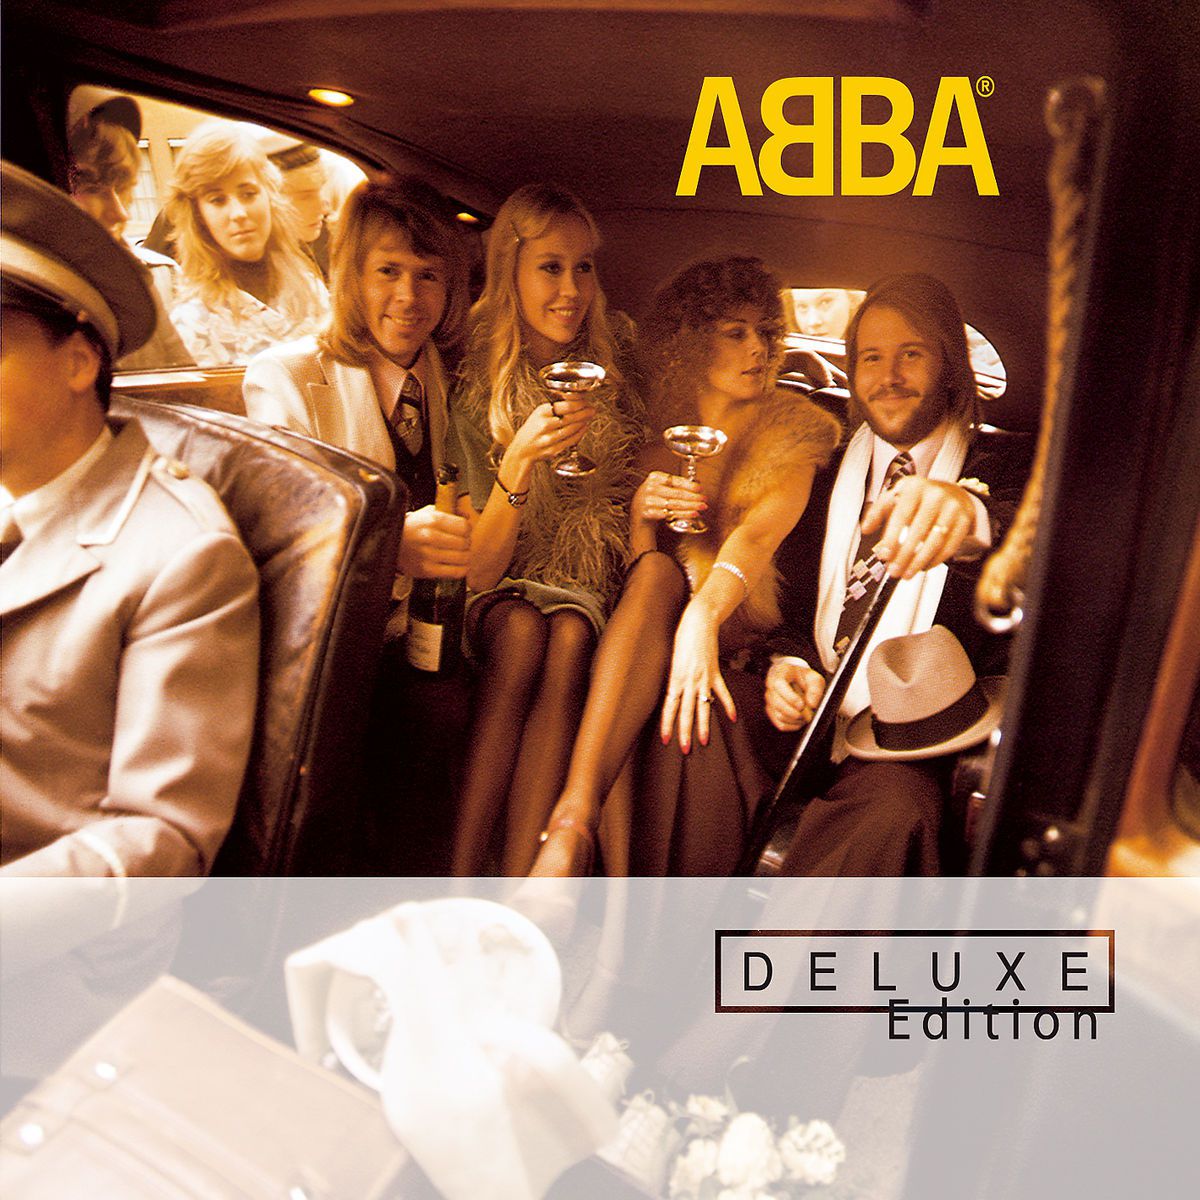 ABBA: Das sind die bisherigen 8 Studio-Alben der Kultband